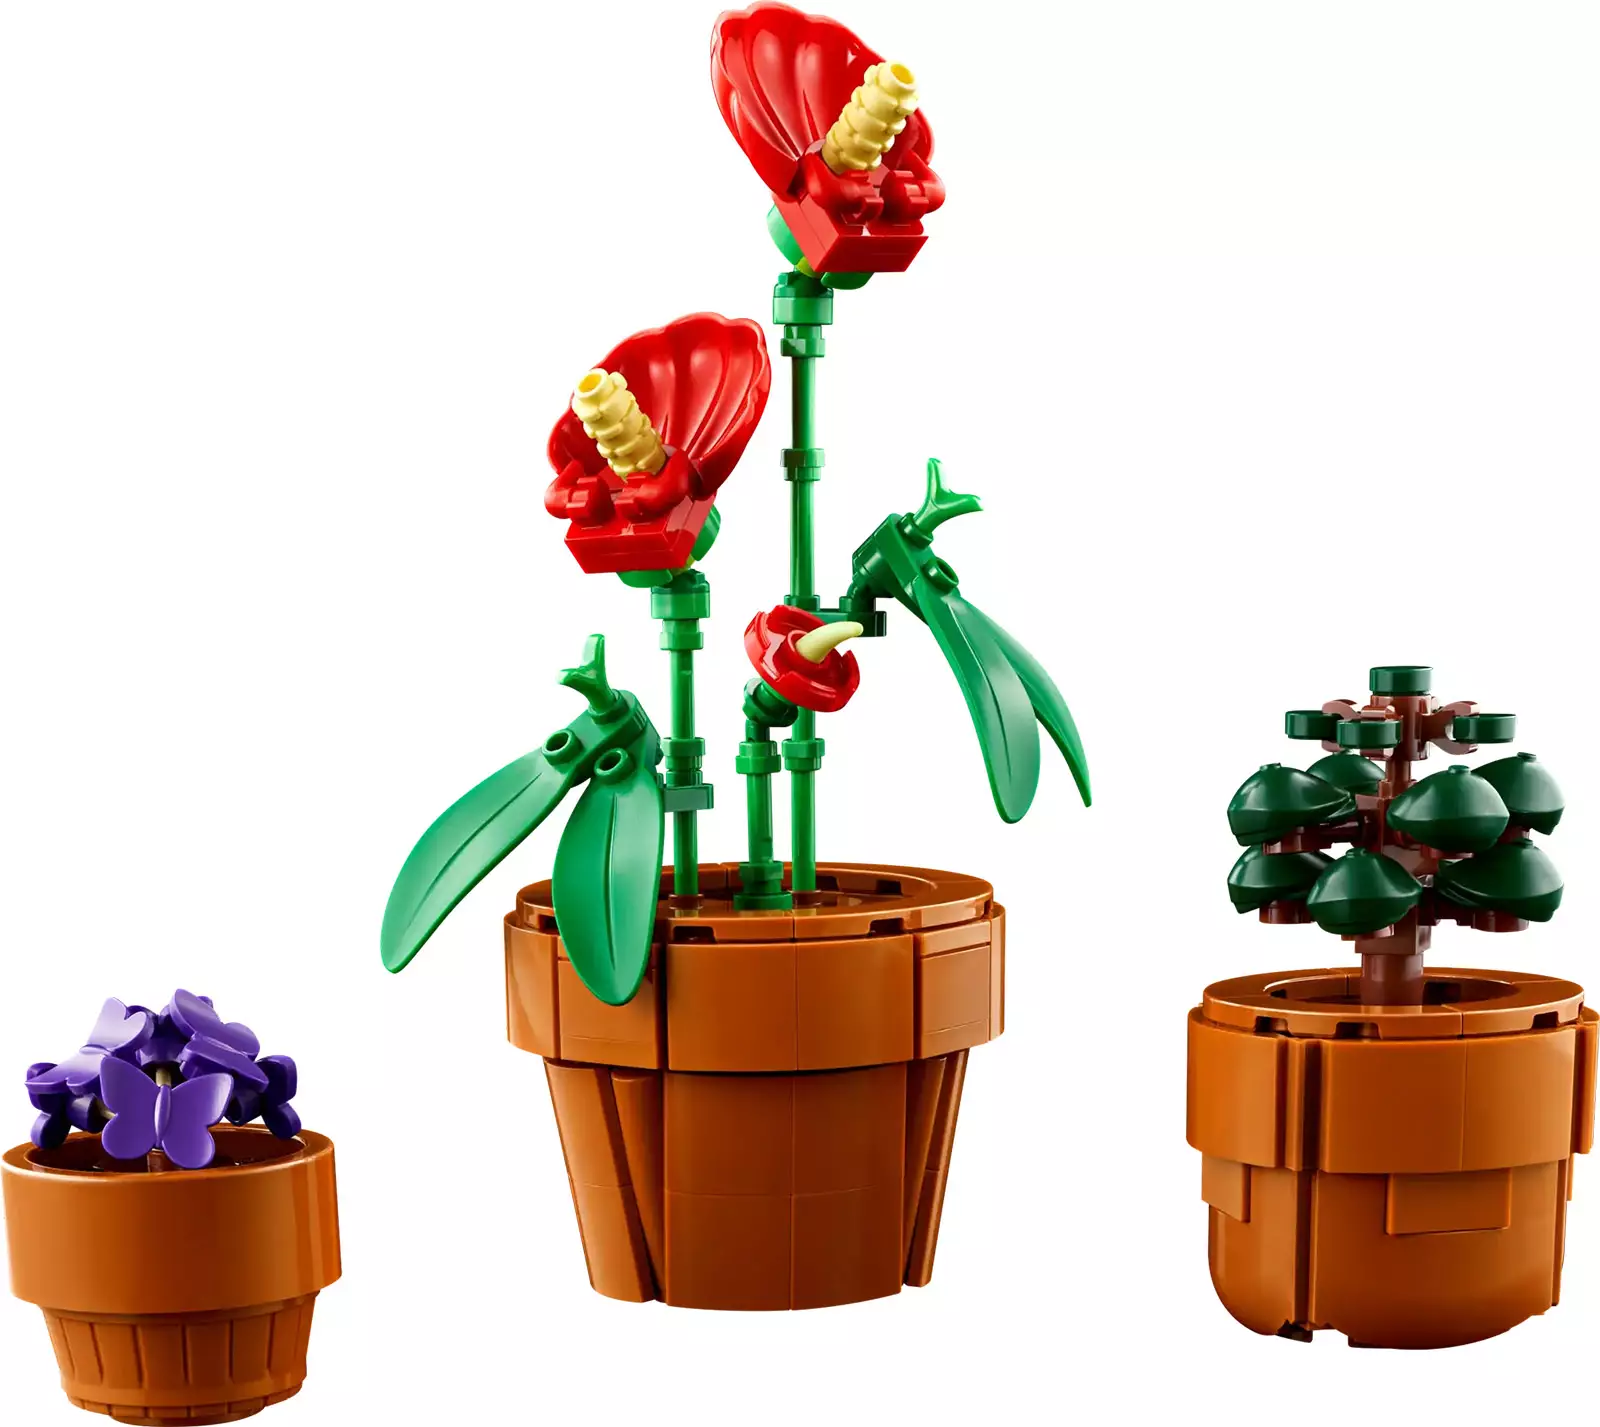 LEGO Tiny Plants 10329, une oasis verdoyante en miniature